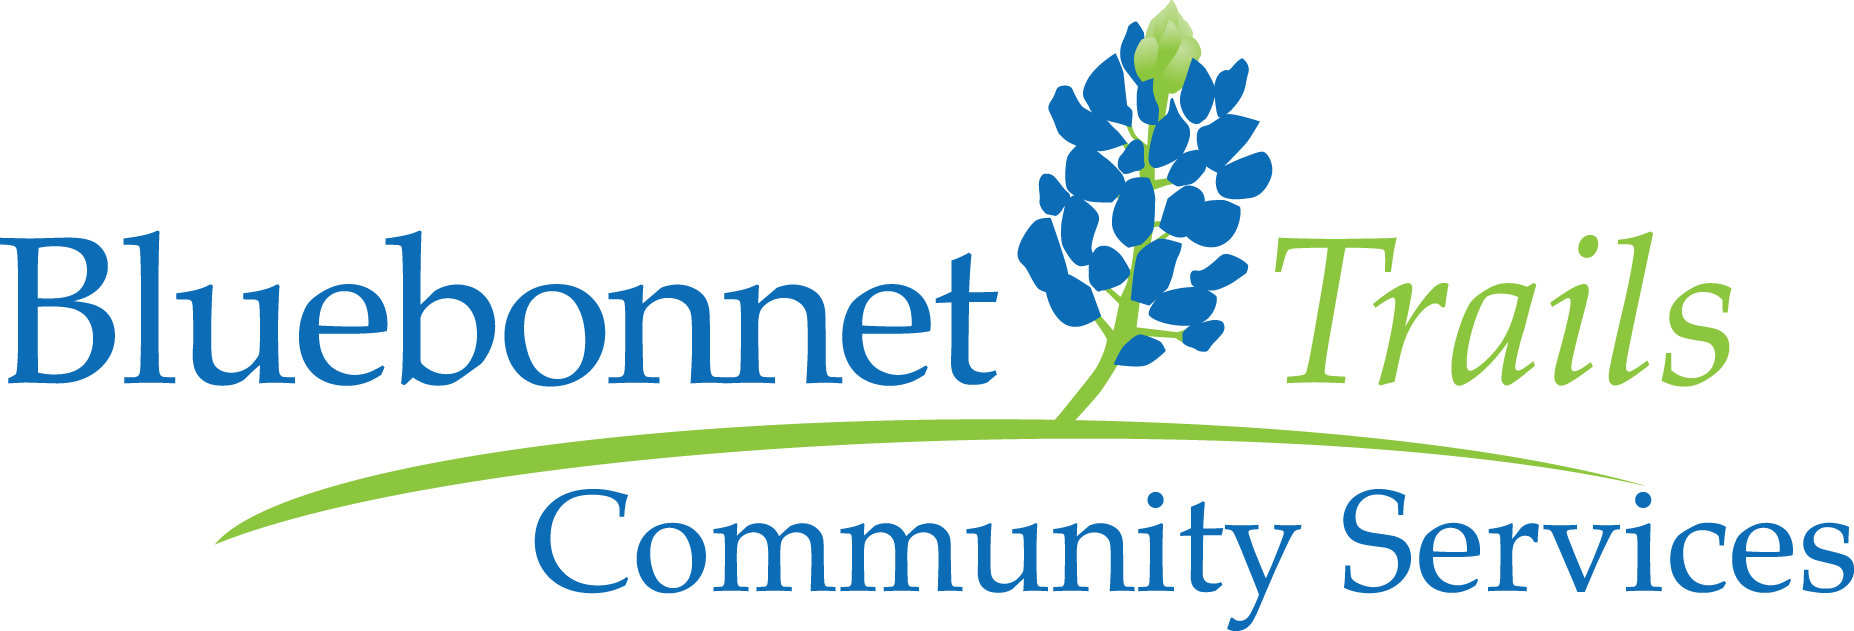 Bluebonnet Logo - Bluebonnet Trails Community Services - Braun & Butler Construction